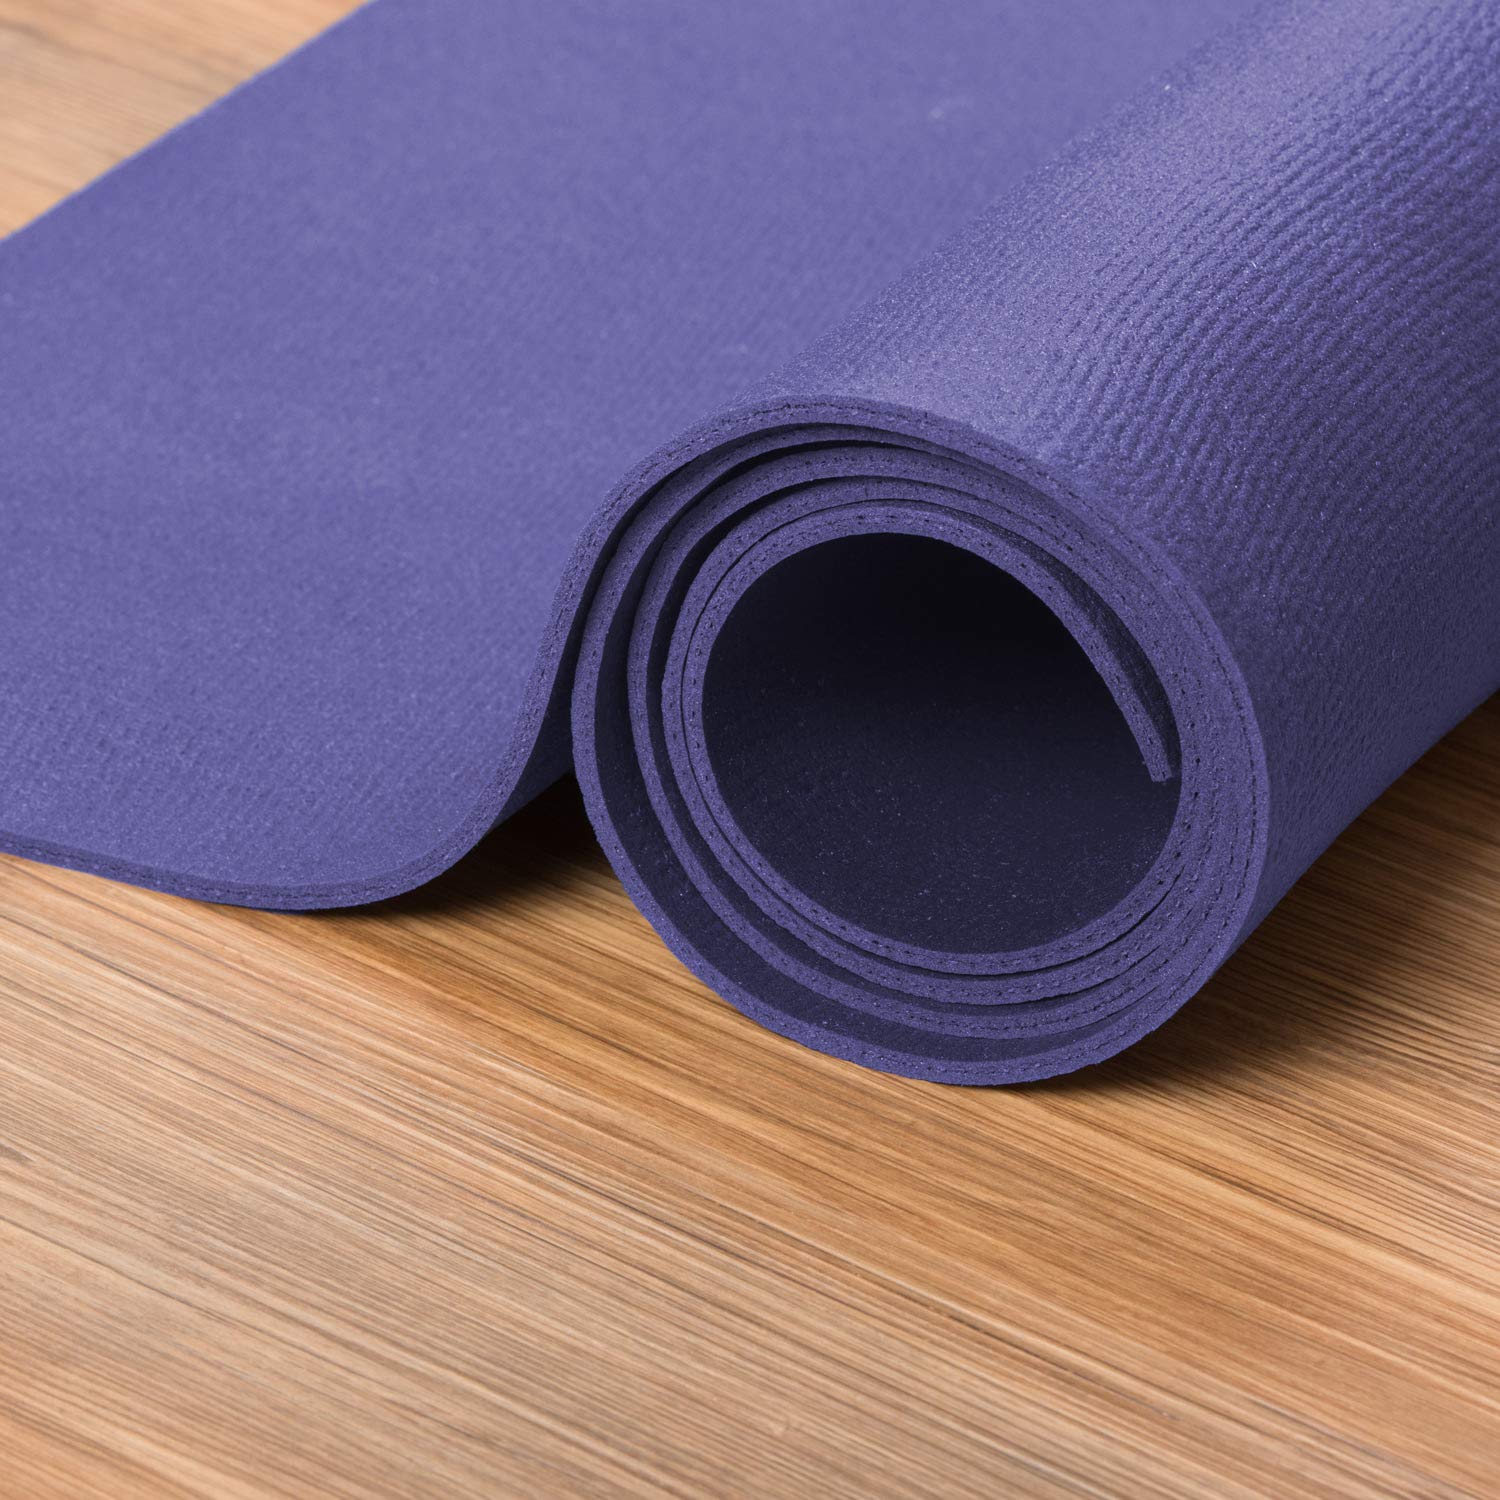 XXL Yogamatte in verschiedenen Farben + Größen, schadstofffreie Yogamatte in lila, besonders groß und breit, OEKO-Tex 100 zertifiziert und rutschfest